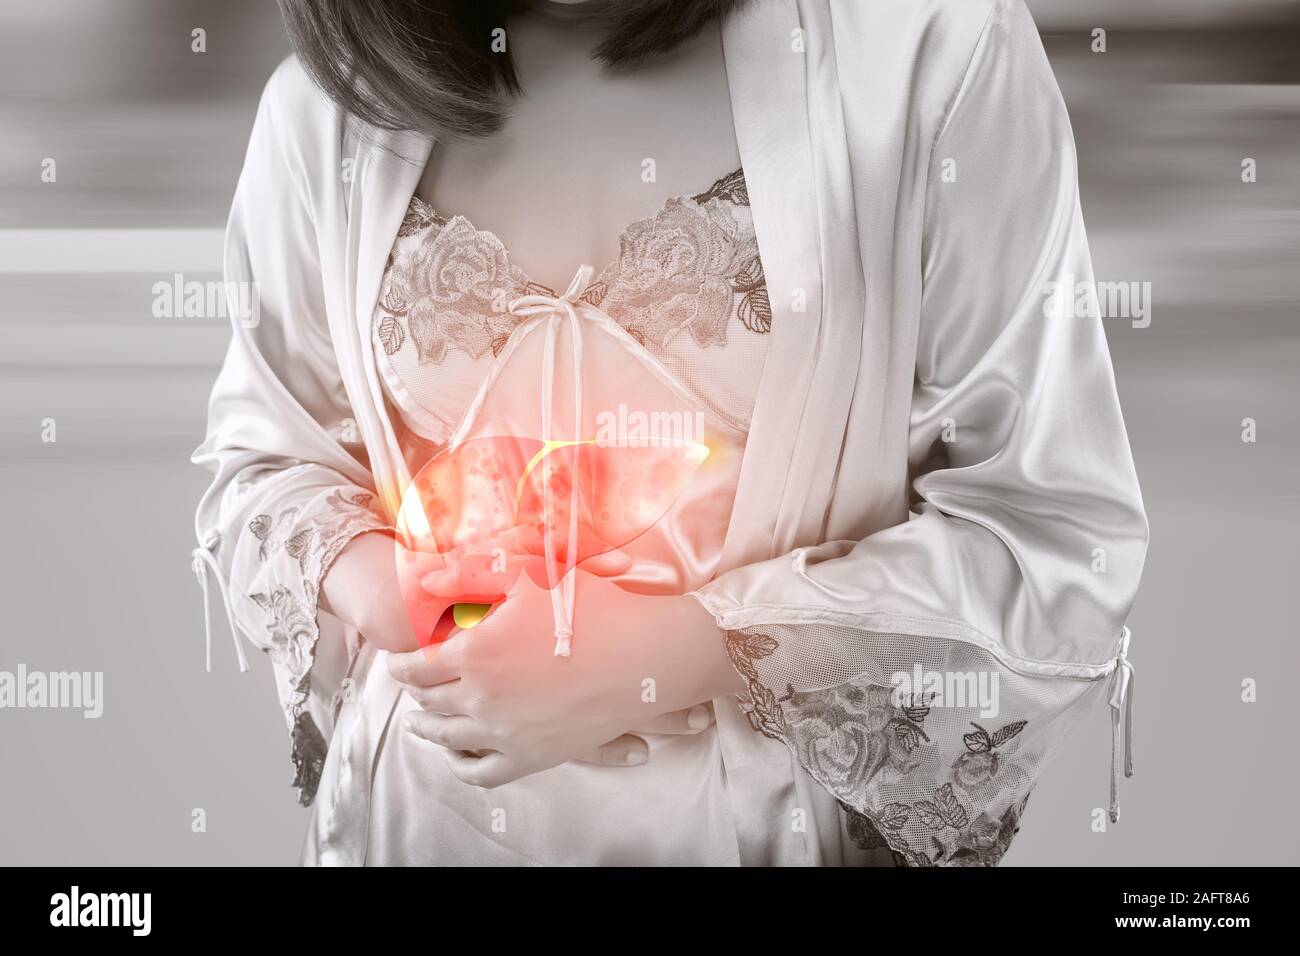 L'illustrazione del fegato è sul corpo di donna contro uno sfondo grigio, malattia del fegato o di epatite, concetto con problema di corpo e di anatomia femminile Foto Stock